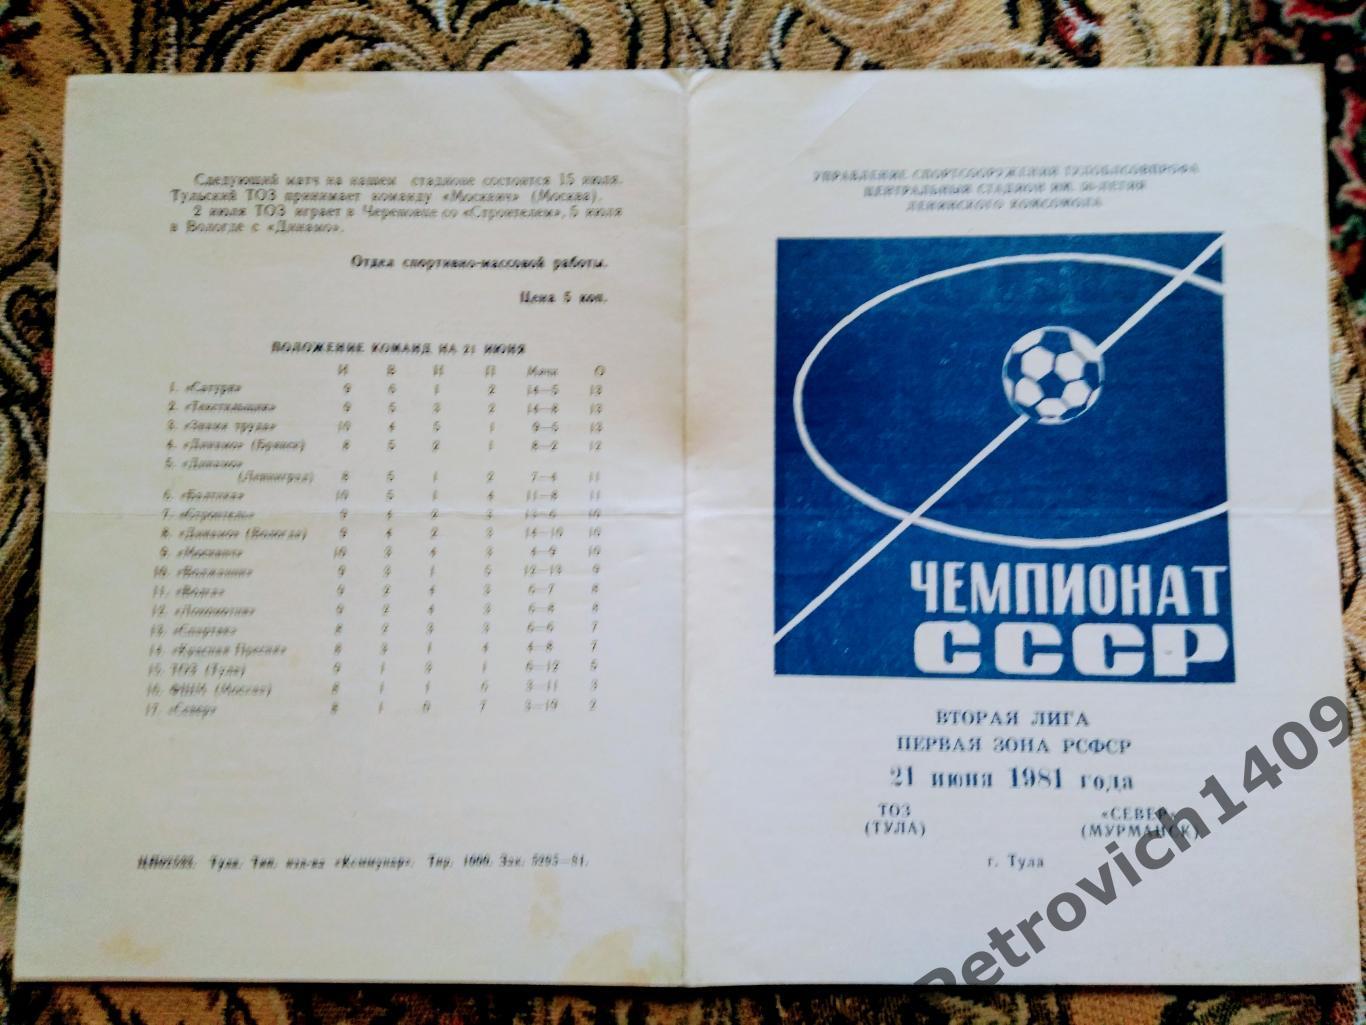 ТОЗ Тула - Север Мурманск 21 июня 1981 год 1